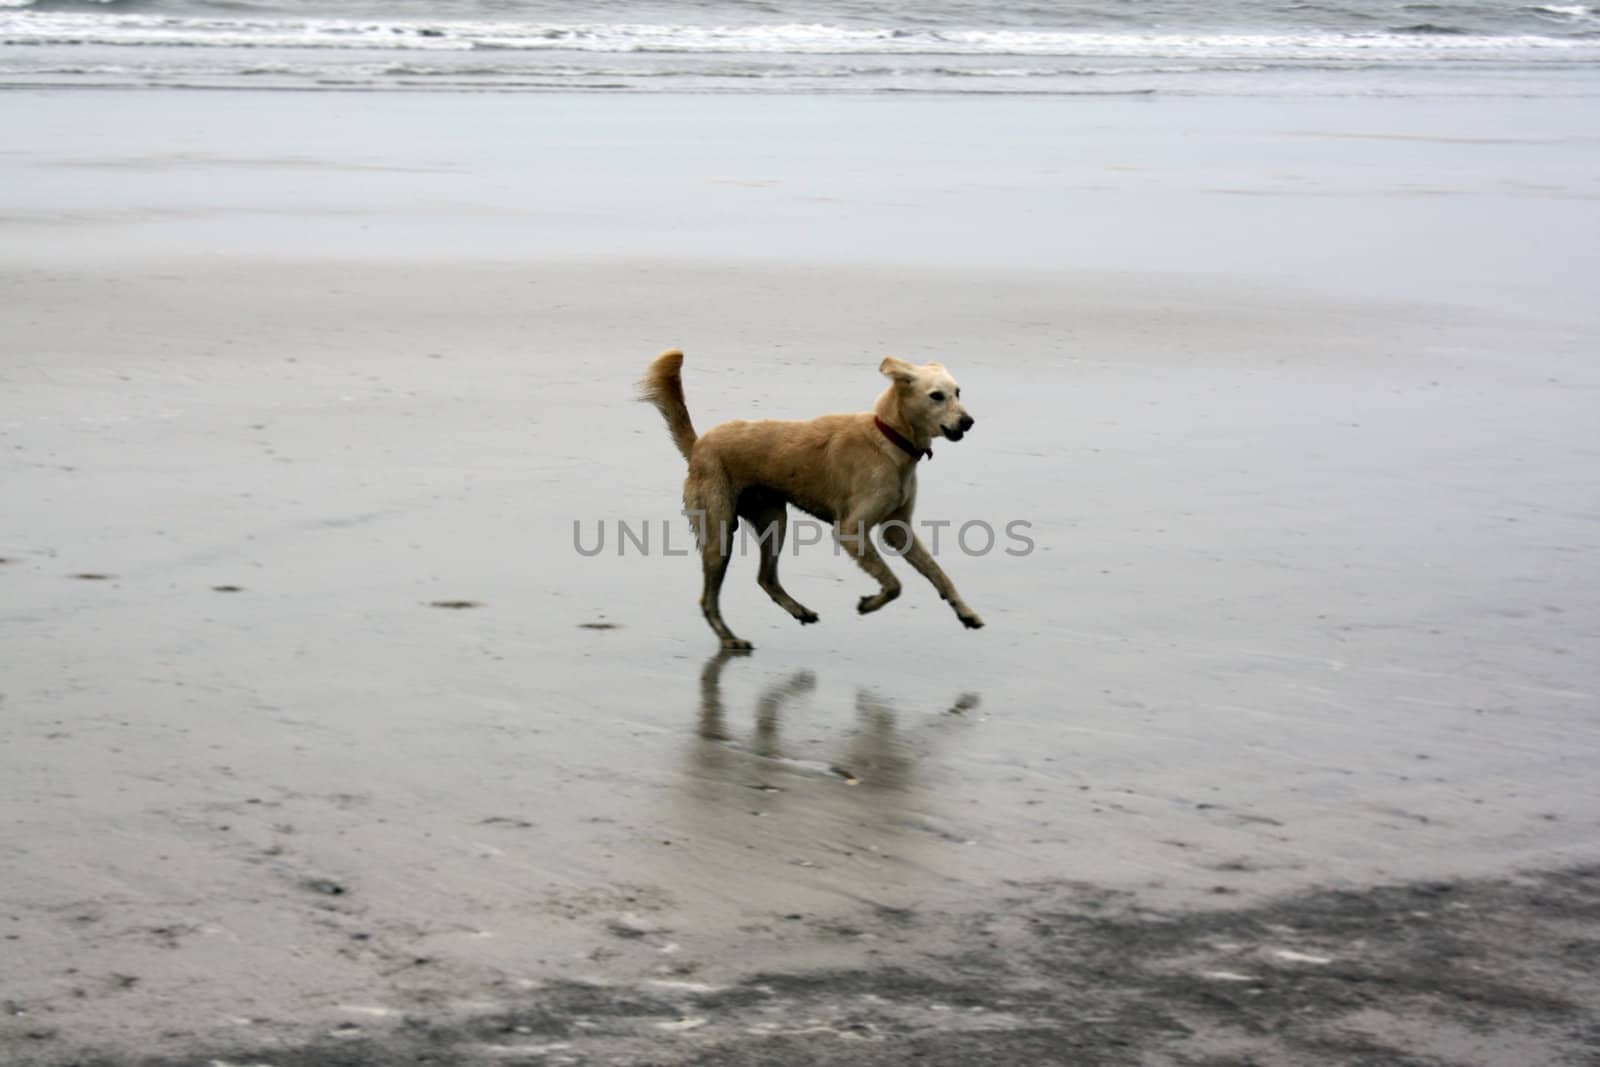 A wild dog running franatically on a beach.